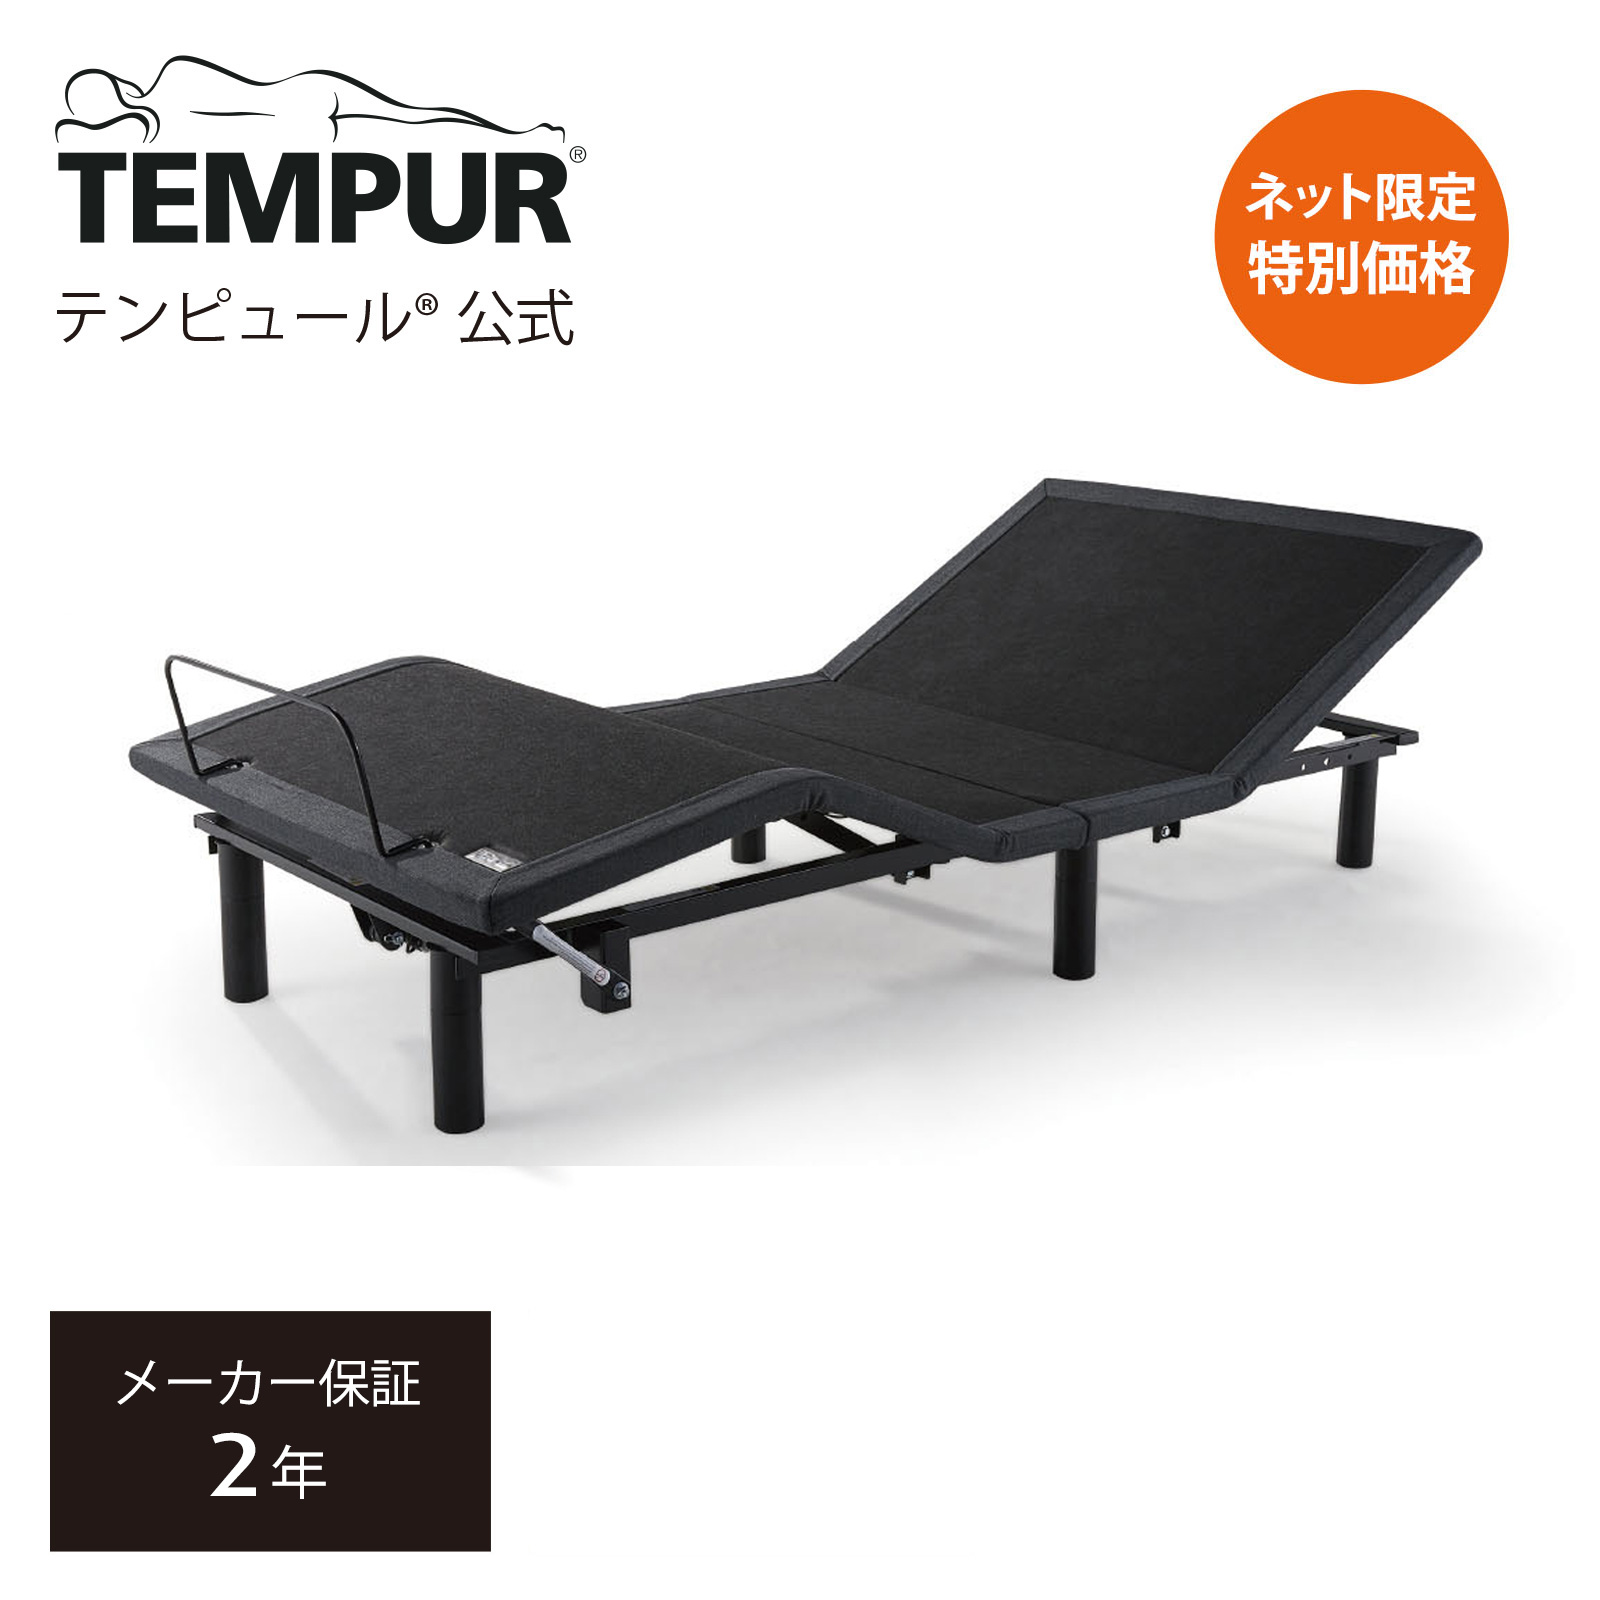 【楽天市場】【公式】テンピュール 電動ベッド シングル セミダブル 